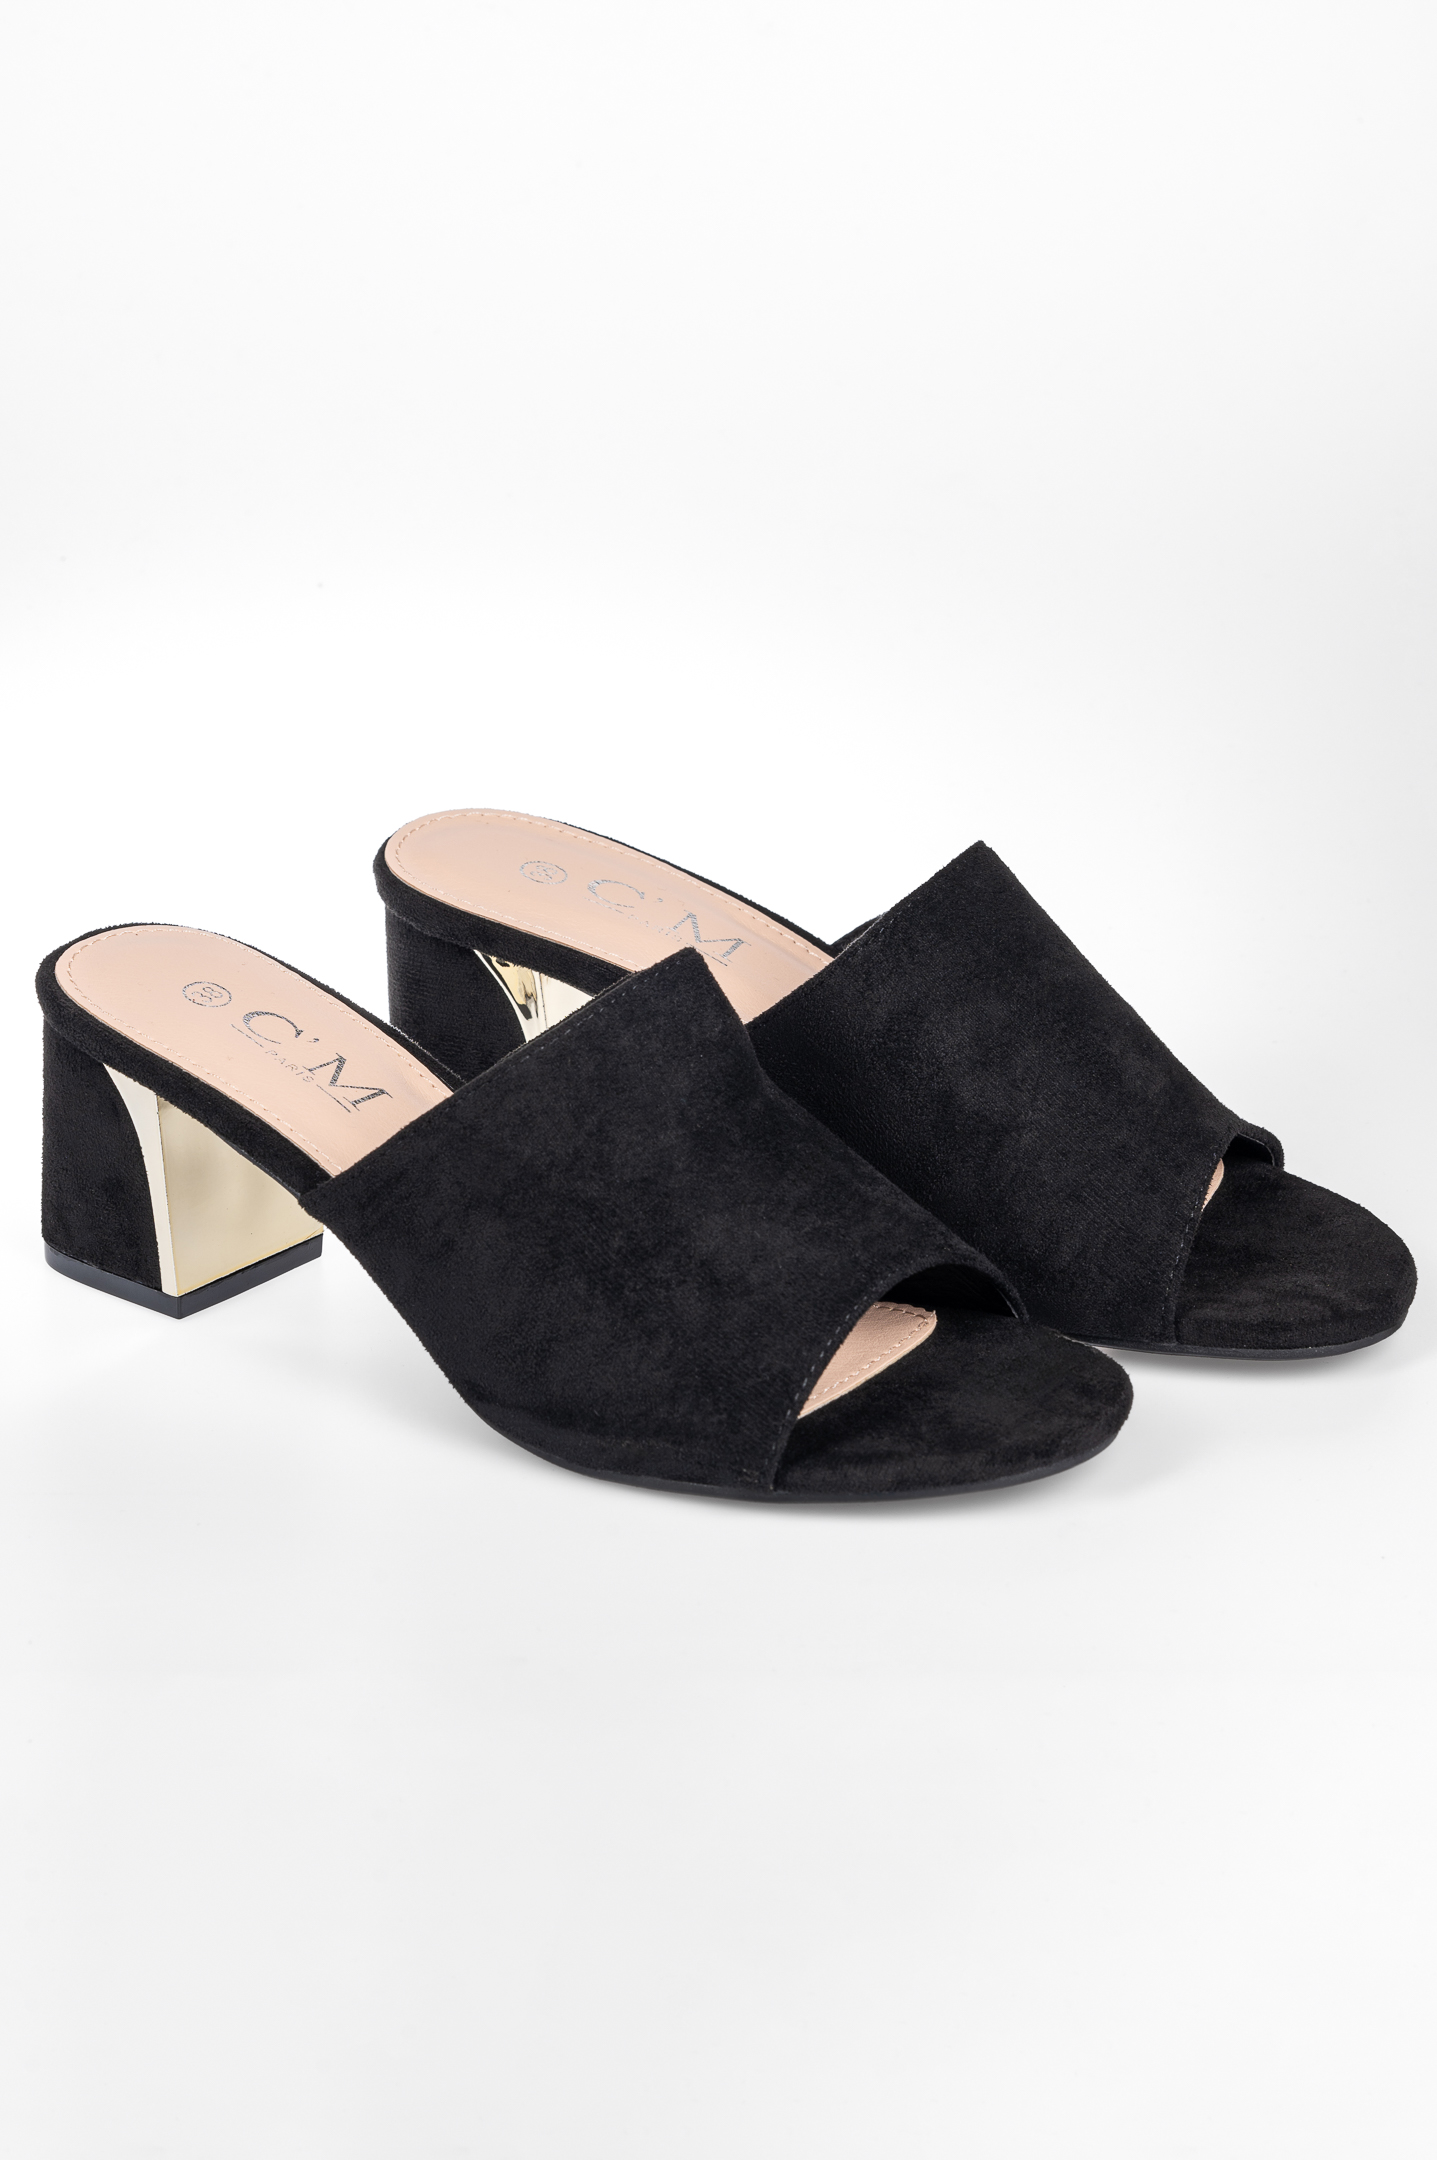 Παπούτσια > Mules Suede mules με μεταλλική λεπτομέρεια στο τακούνι - Μαύρο